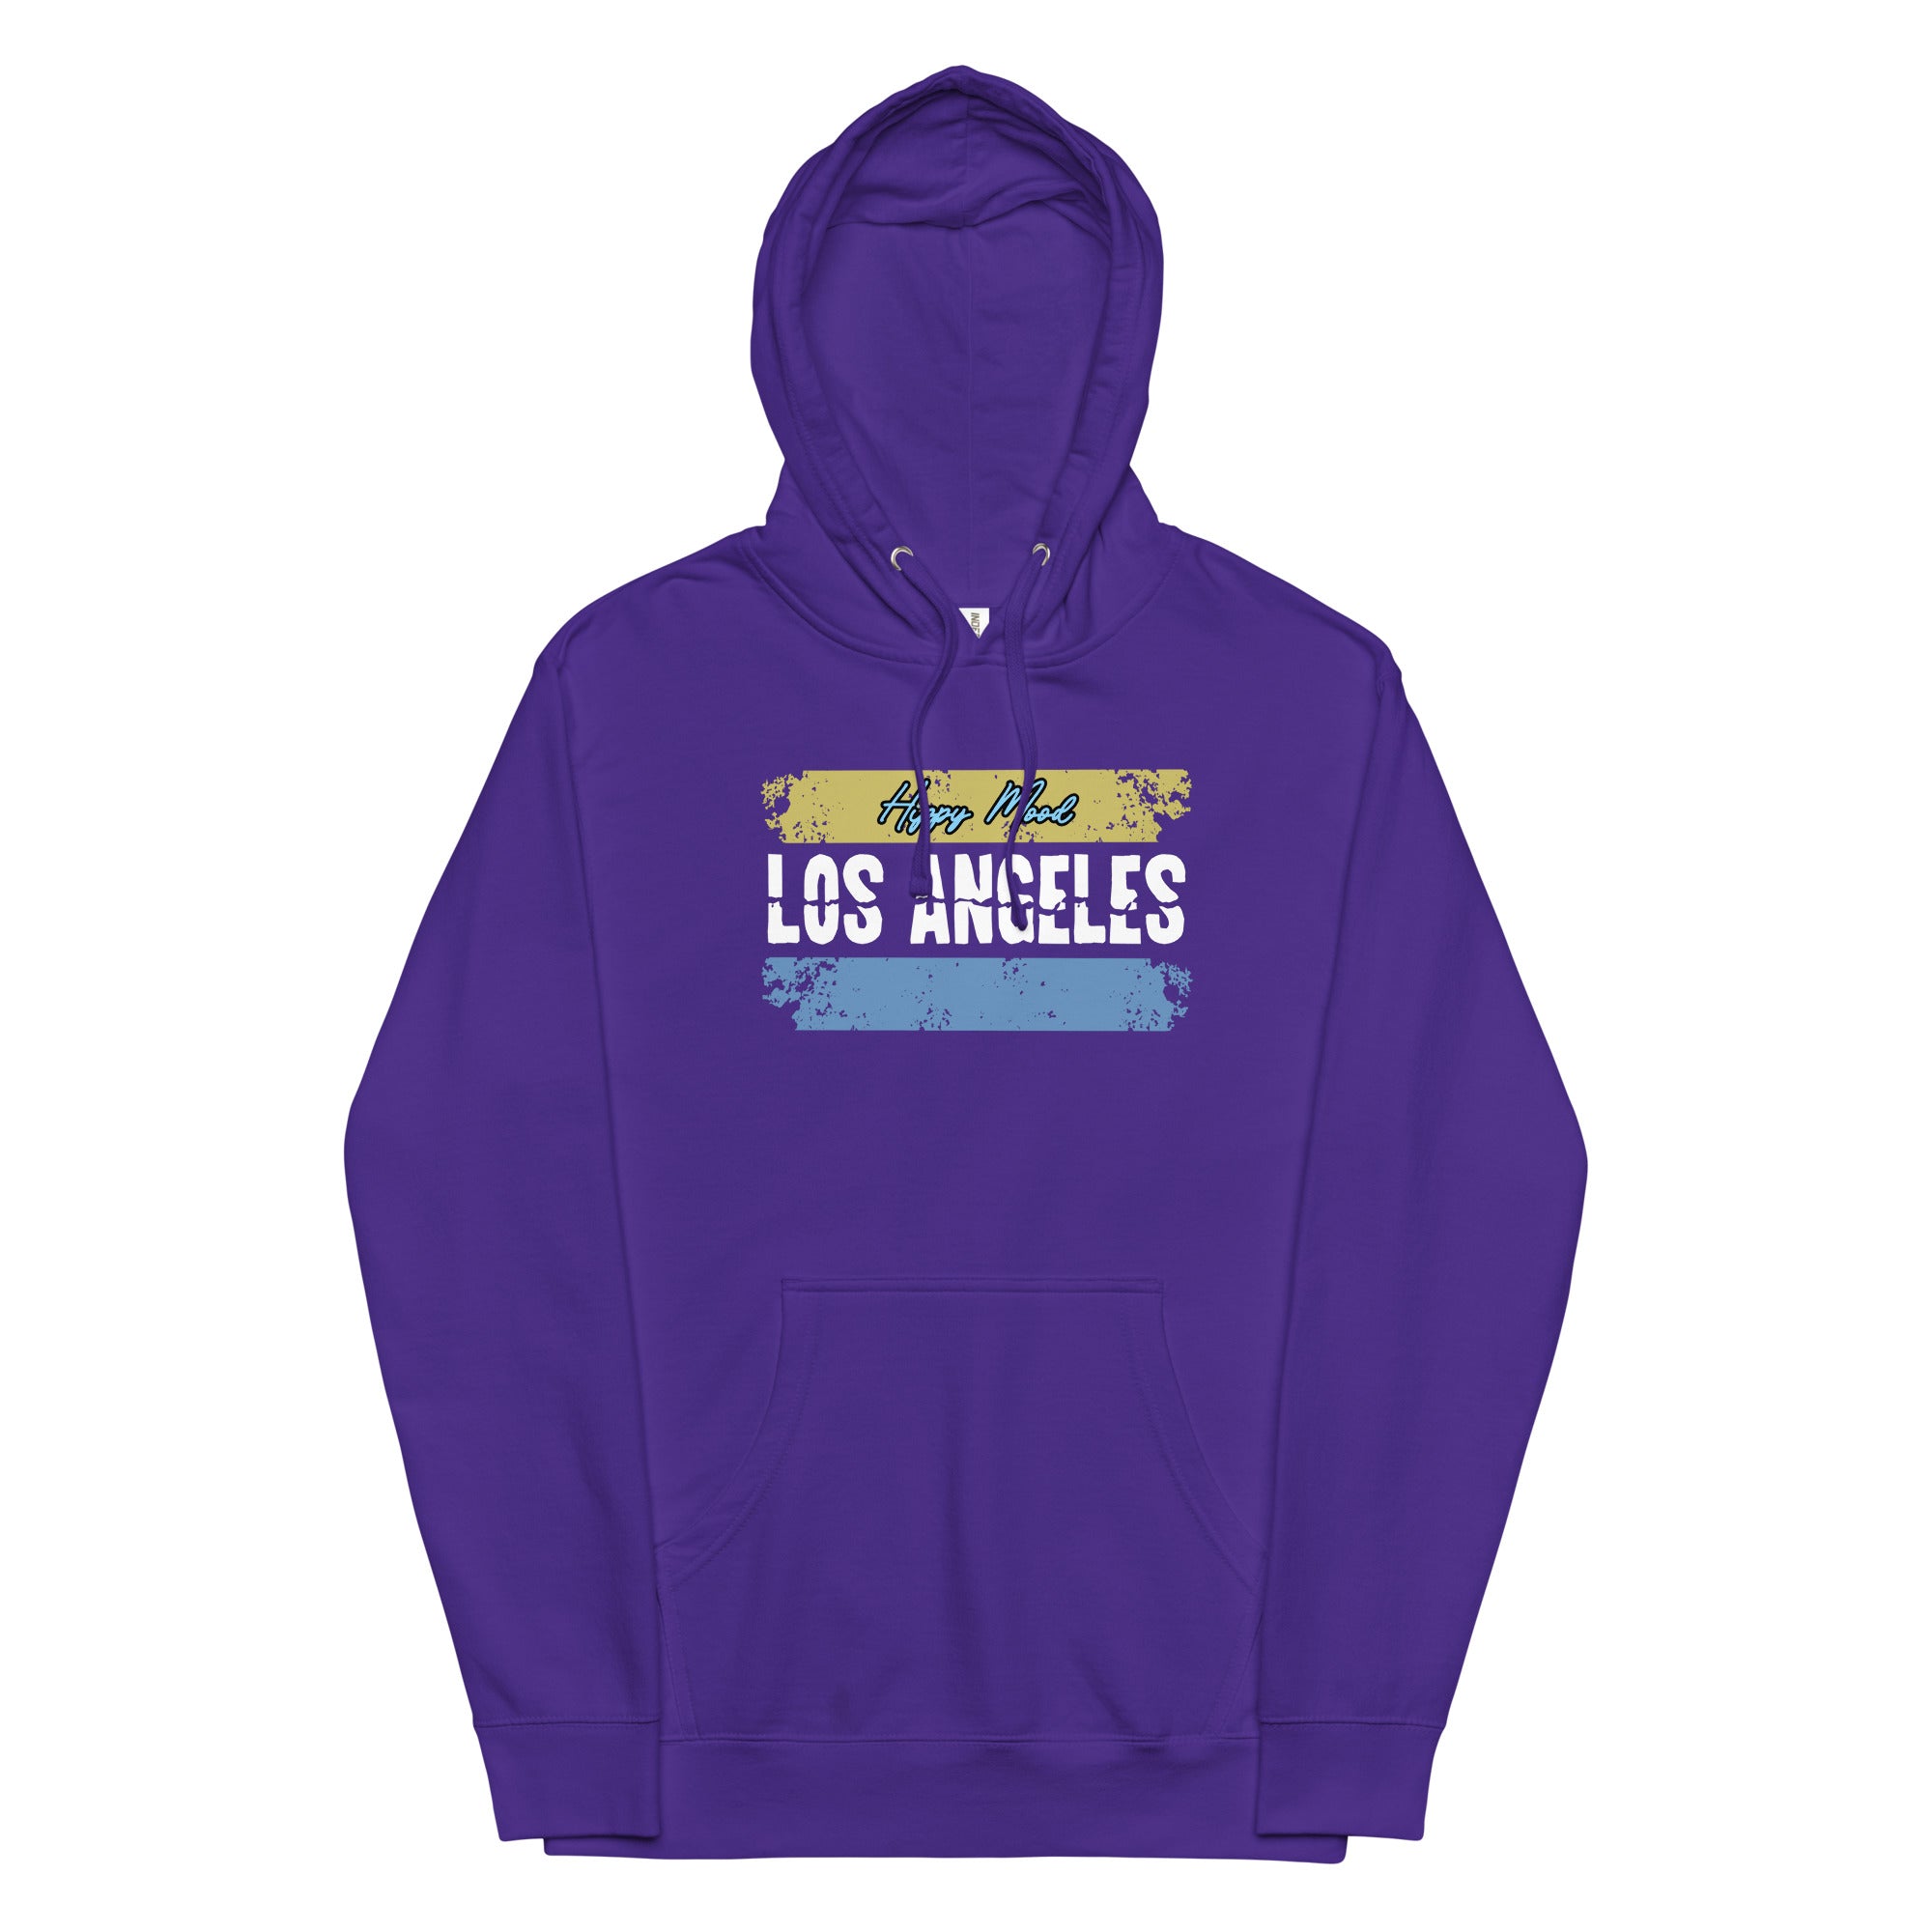 Los Angeles | Unisex midweight hoodie